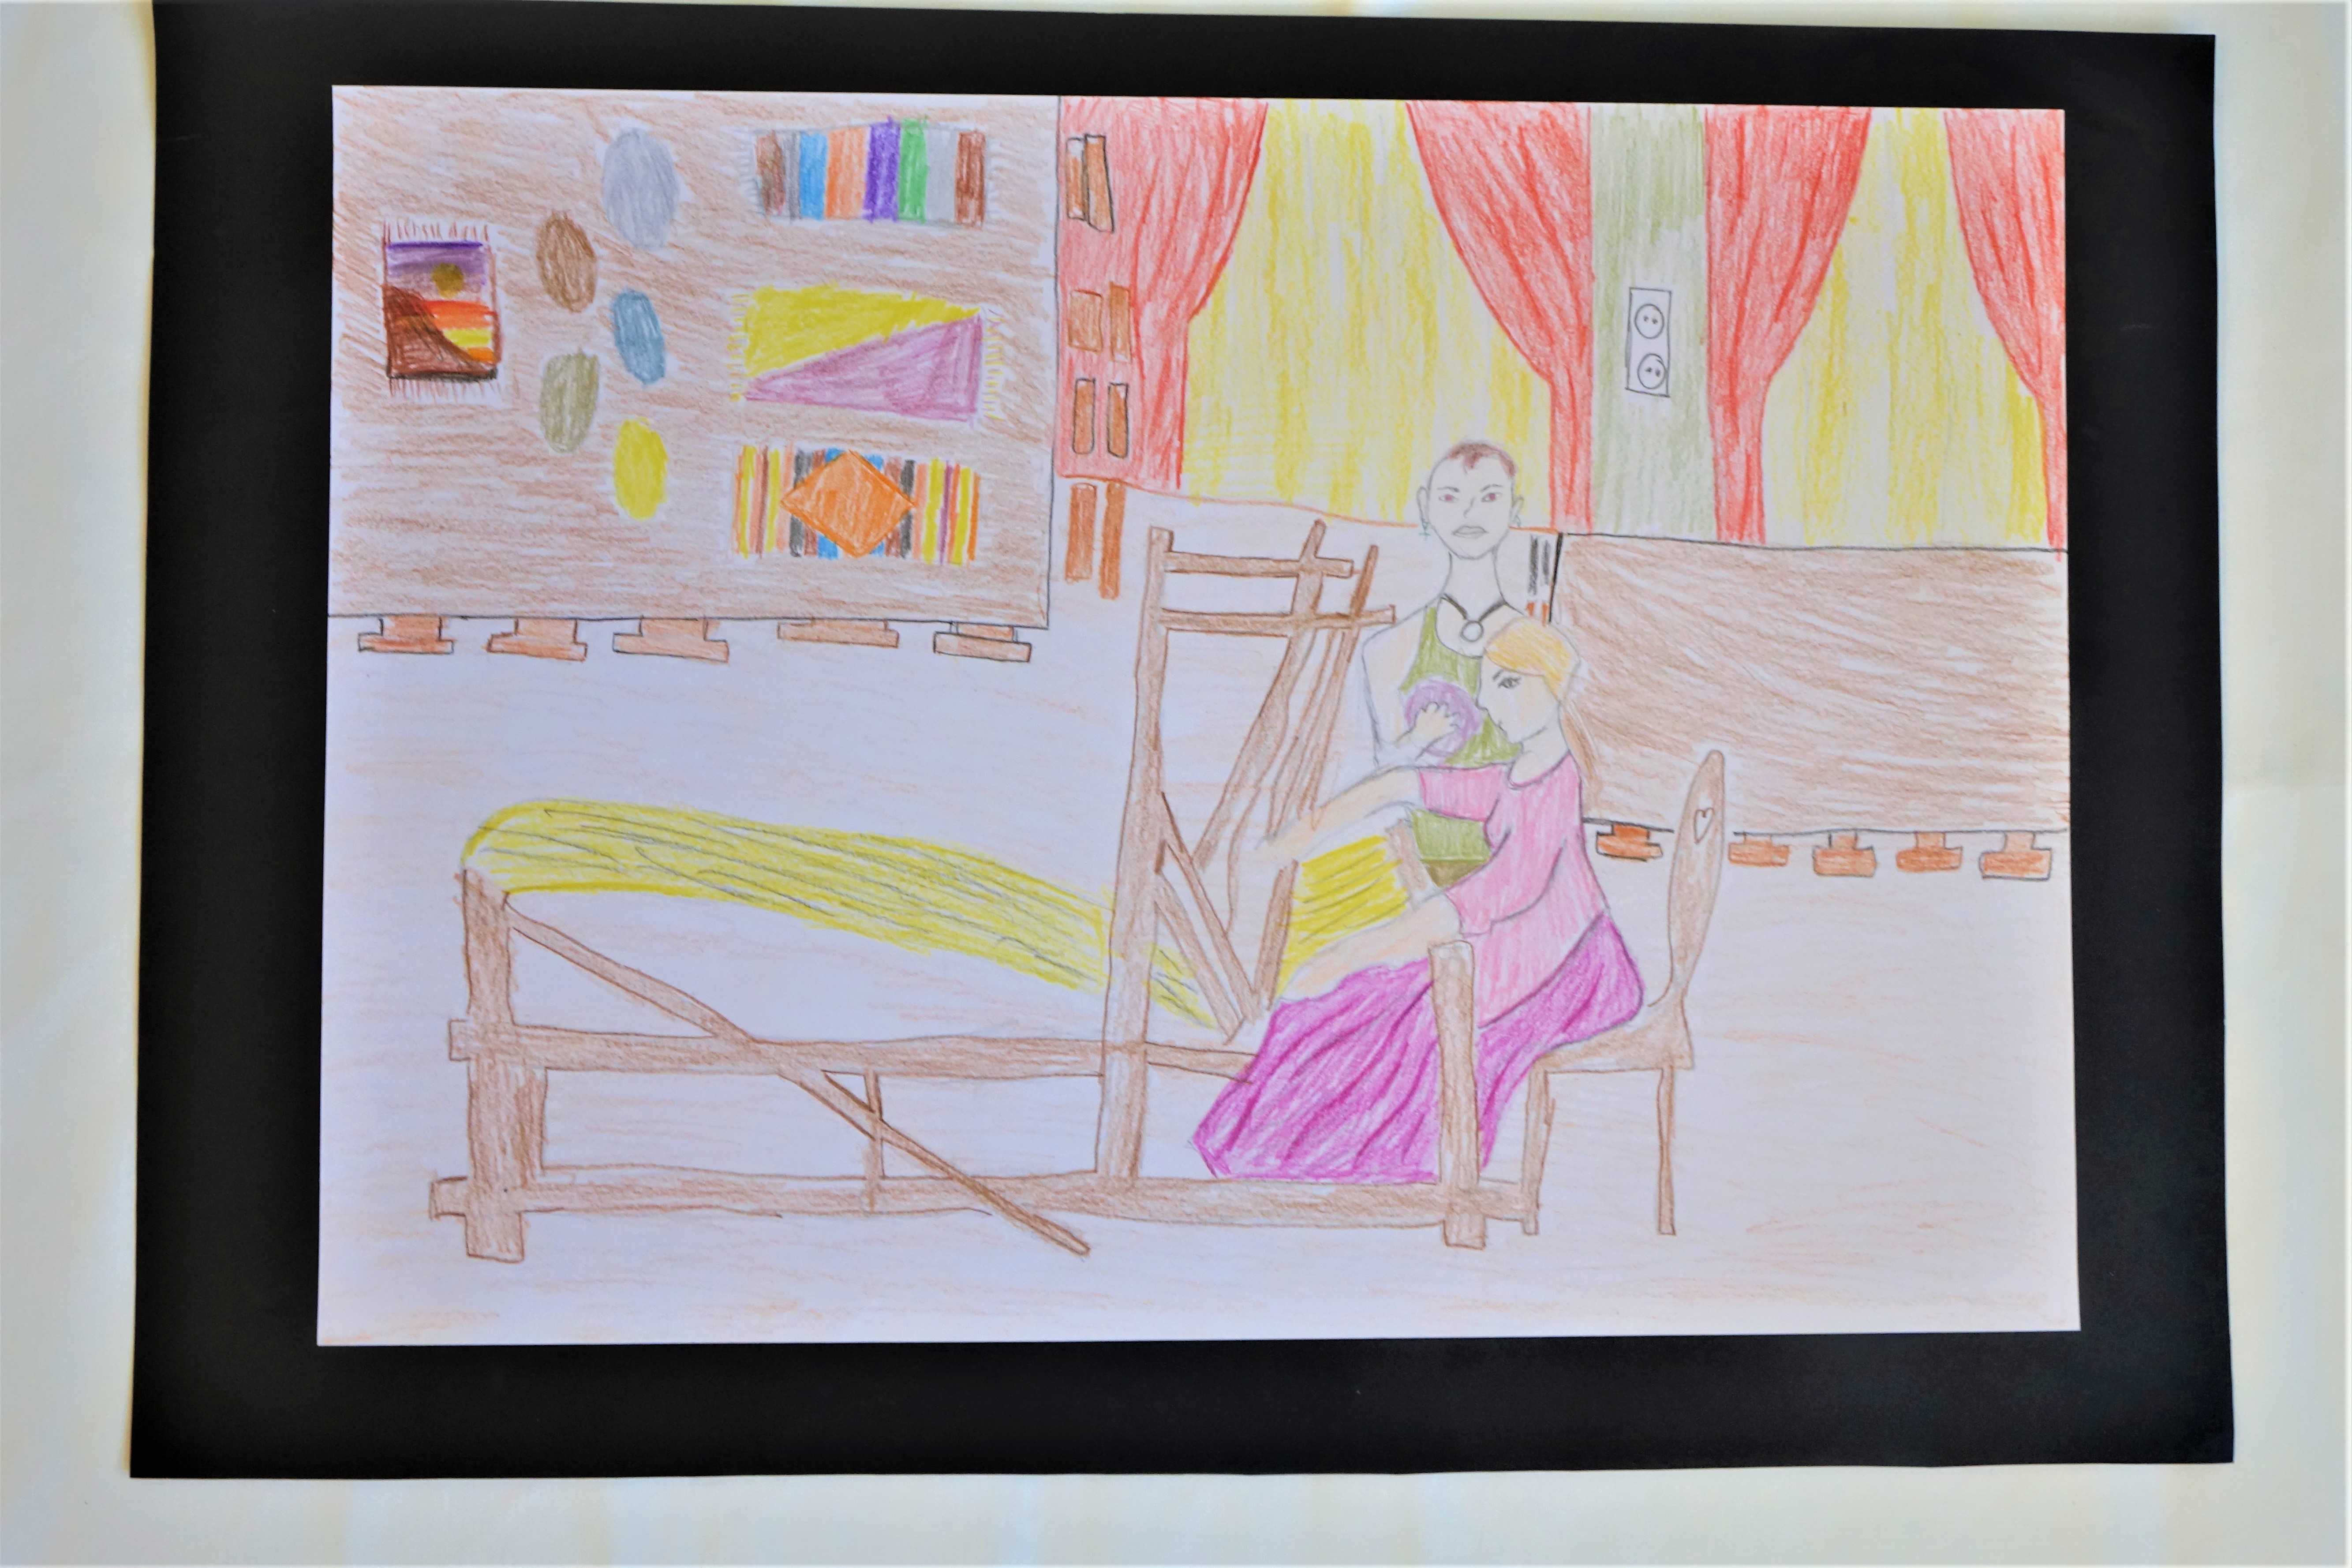 Ceruzával készült rajz, mely az intézmény szövödéjét örökíti meg. A kép előterében egy szövőszék látható, mellette egy női alak ciklámen ruhában. A női alak mellett egy férfialak áll, gombolyaggal a kezében. A kép hátterében két asztal látható székekkel. A bal oldali asztalon fonalgombolyagok és kész szőnyegek, a jobb oldali asztal üres. Látható a háttérben két ablak, piros függönnyel.